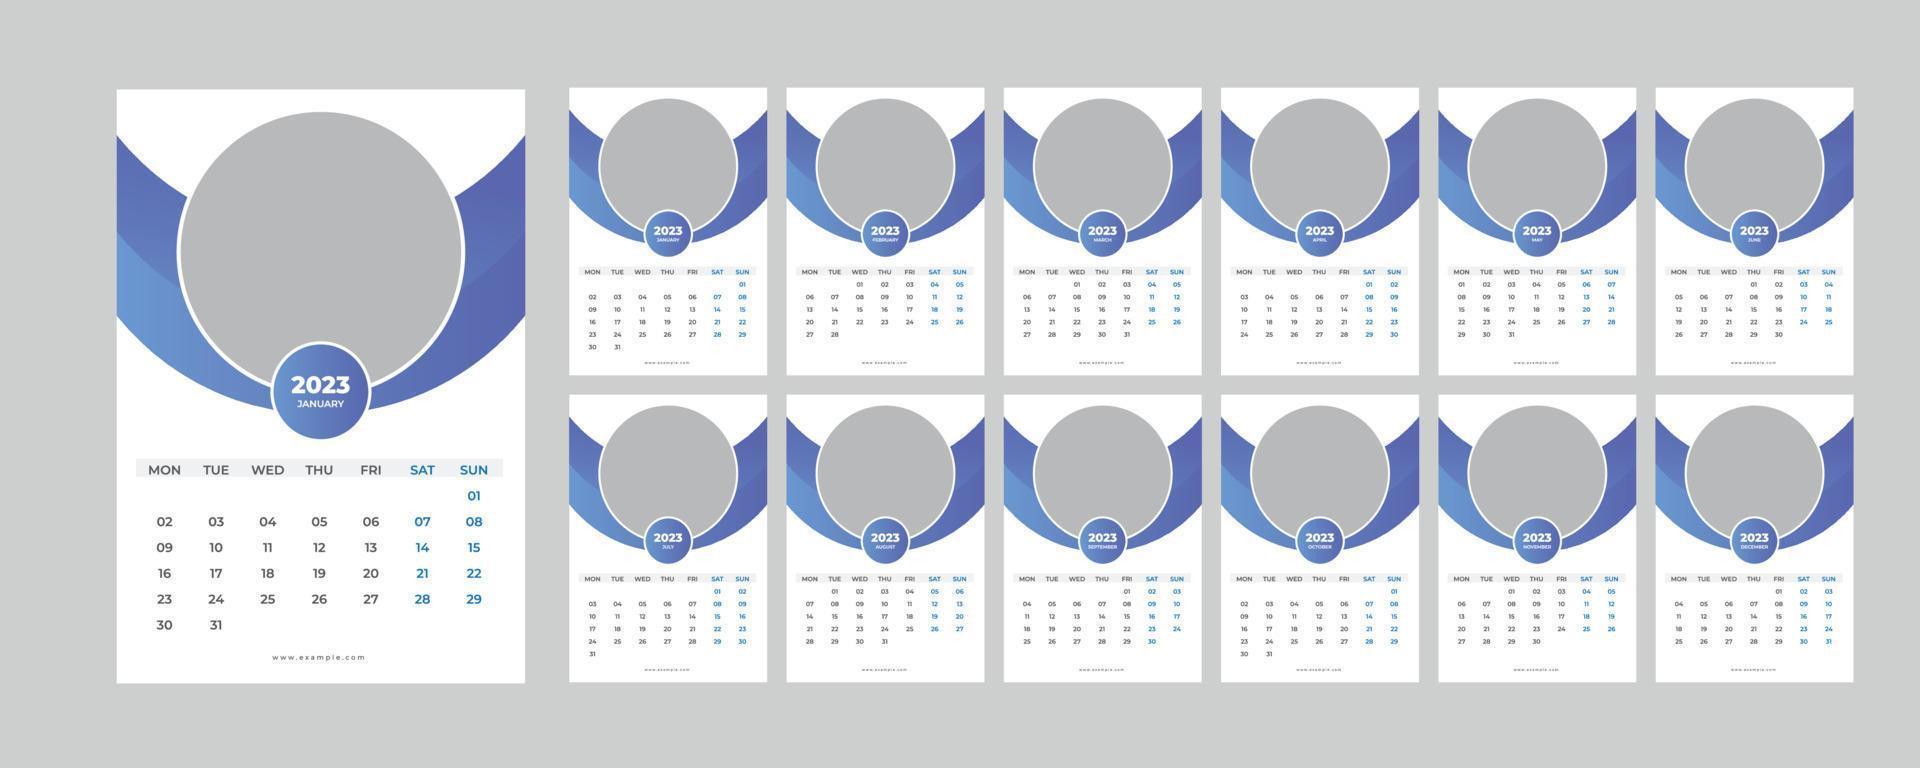 Wall Calendar 2023. vector